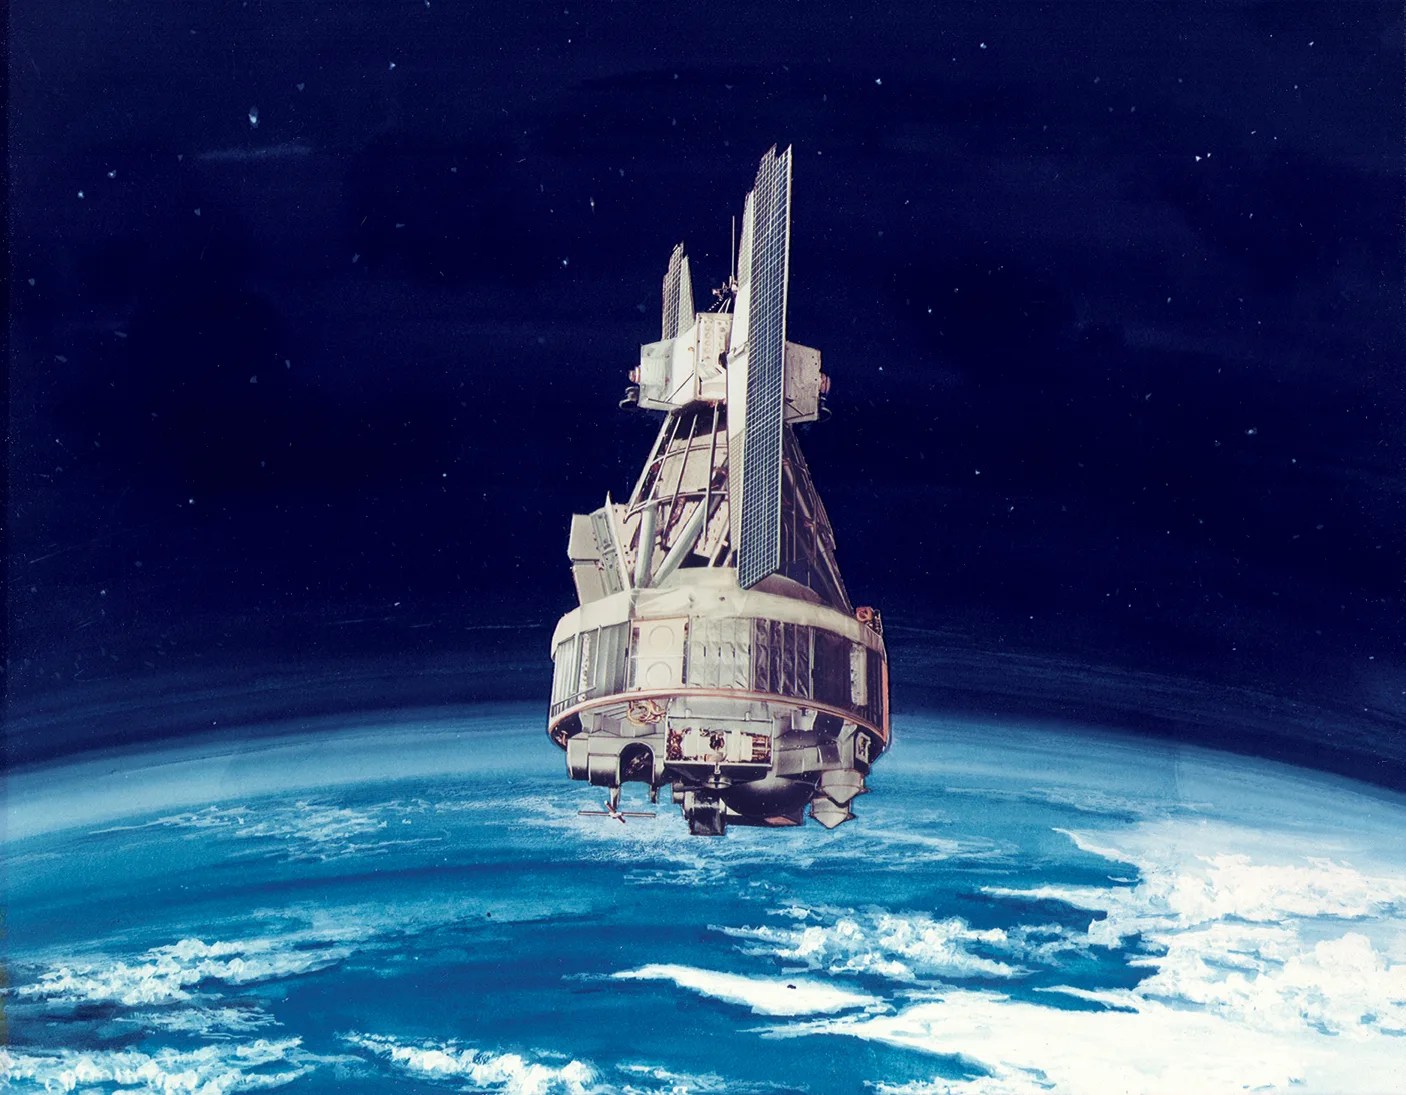 An artist's concept of the Nimbus II spacecraft in orbit above Earth.